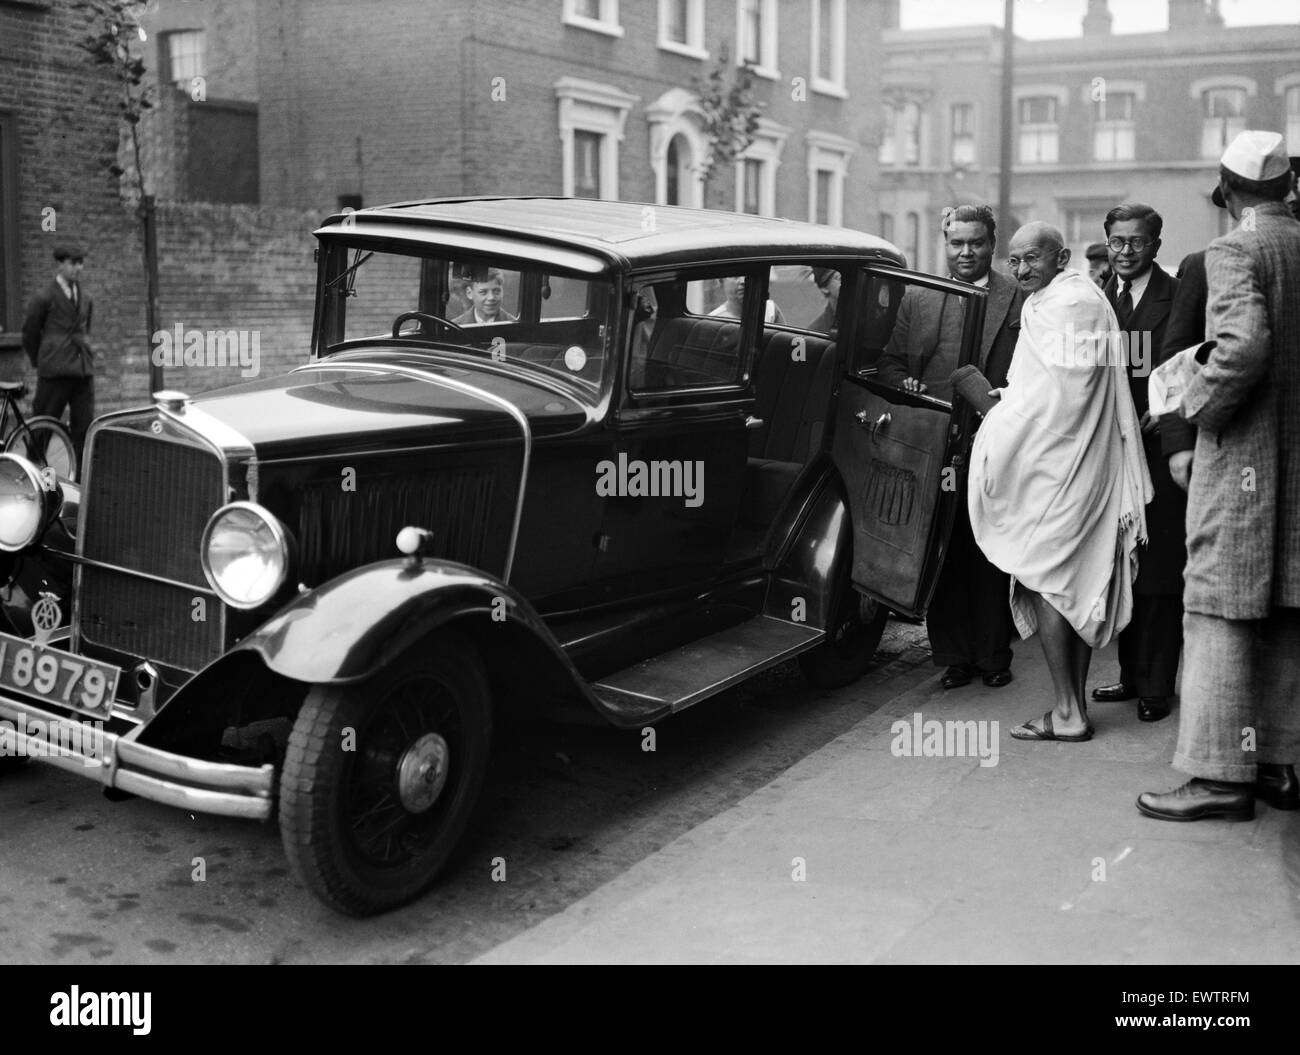 'Mahatma' Mohandas Gandhi, chef du mouvement pour l'indépendance de l'Inde britannique en Inde sous domination, photographié au cours de sa visite en Grande-Bretagne en 1931. Mahatma Gandhi vu ici entrer dans une voiture à l'extérieur de Kingsley Hall at Bromley ni par l'Arc à Londres. 3e octobre 1931. Banque D'Images